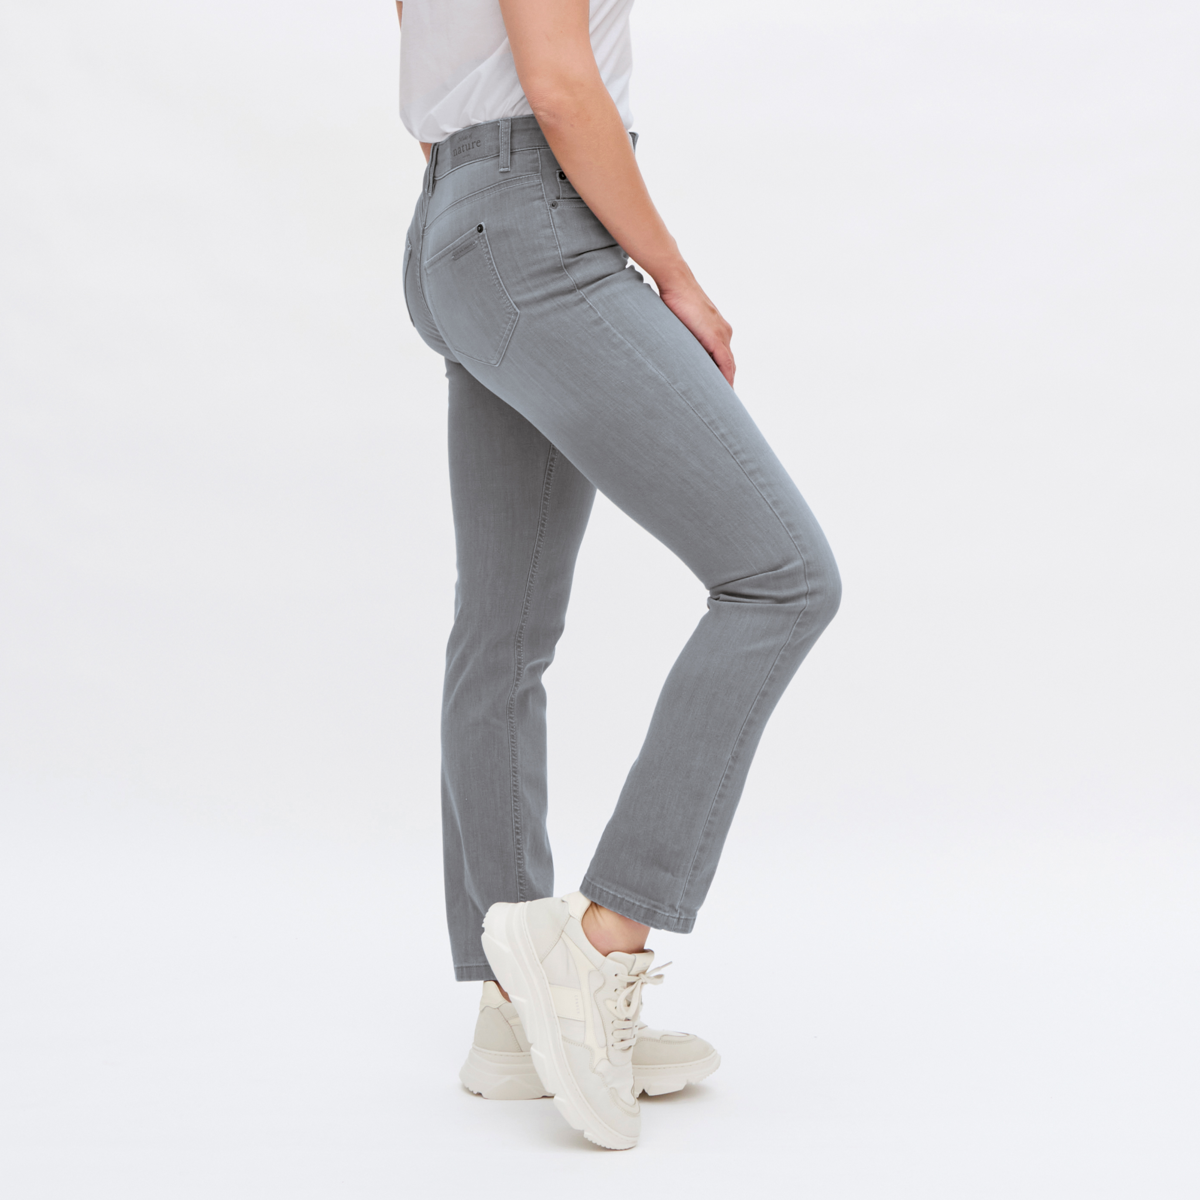 Grey Women Jeans